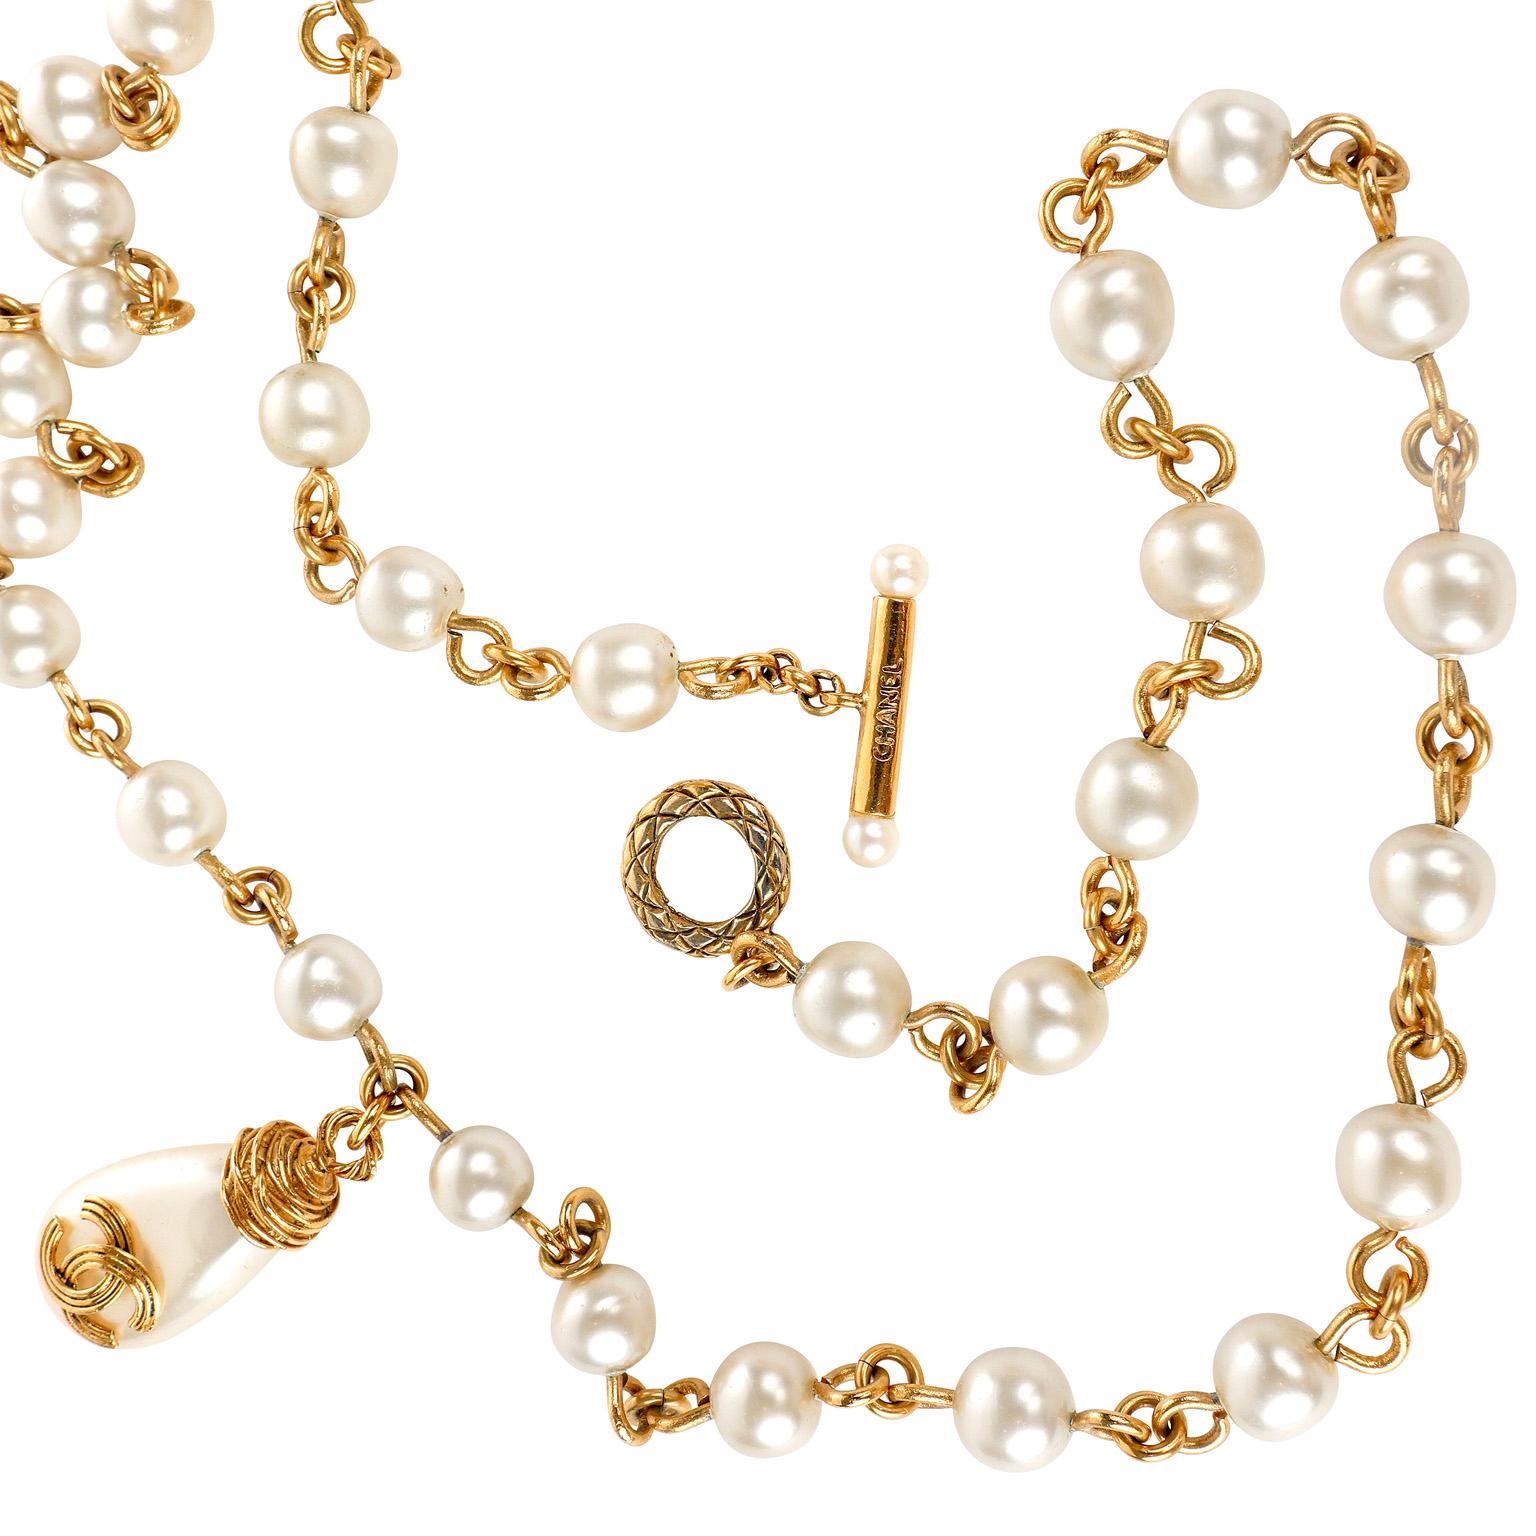 Cet authentique collier de perles Chanel avec grande breloque perle CC est en parfait état vintage.  chaîne plaquée or 24 carats avec fausses perles.  Une seule grande perle en forme de goutte d'eau ornée de CC fait office de pièce maîtresse.  